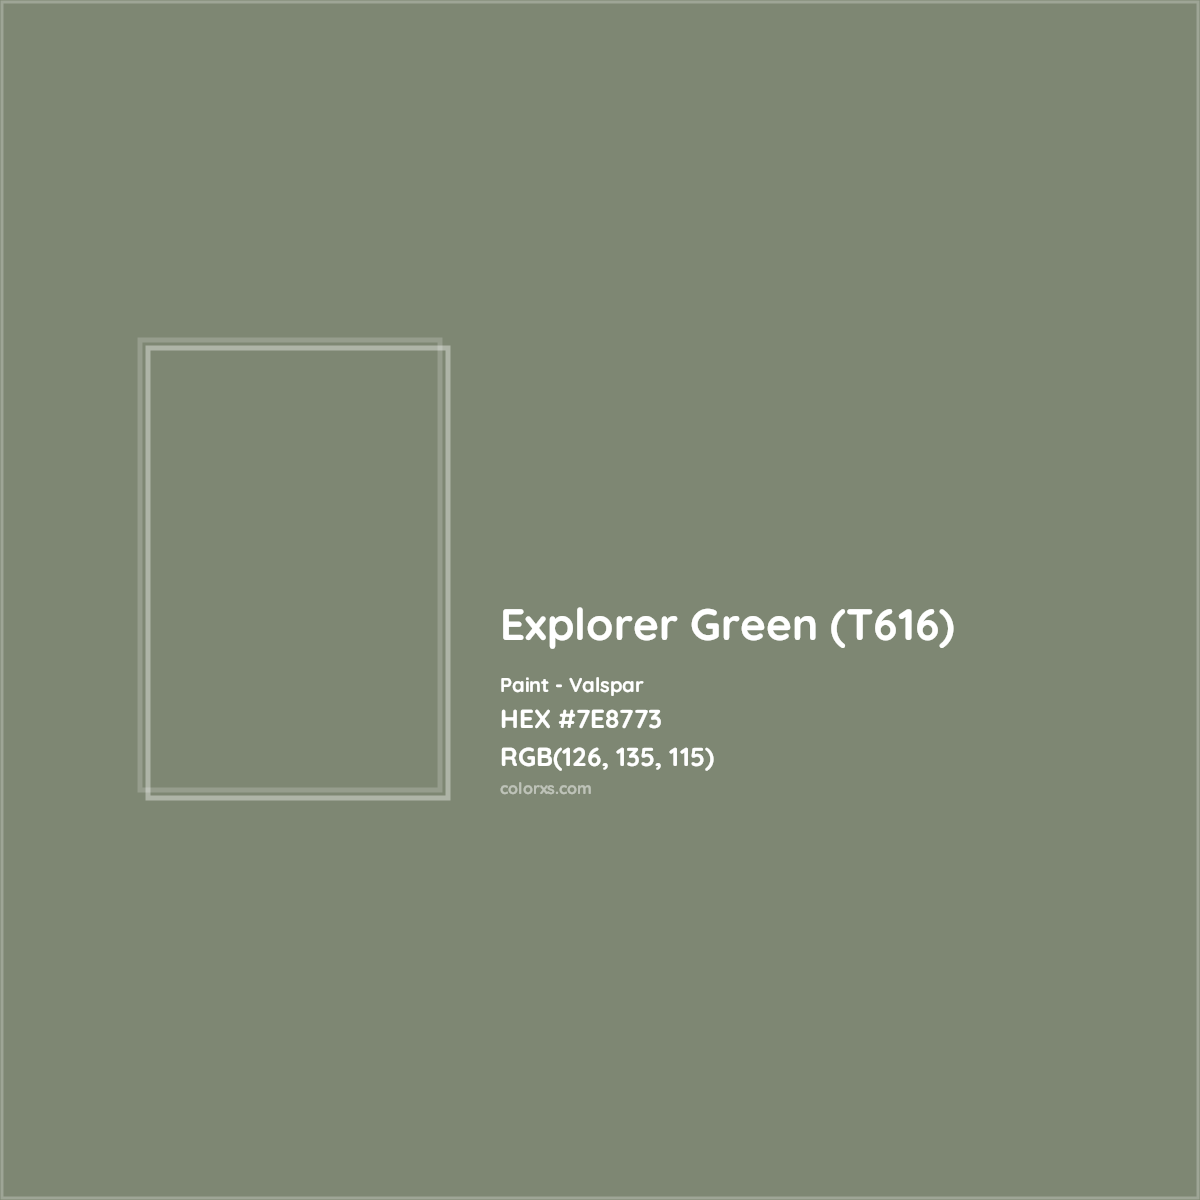 HEX #7E8773 Explorer Green (T616) Paint Valspar - Color Code